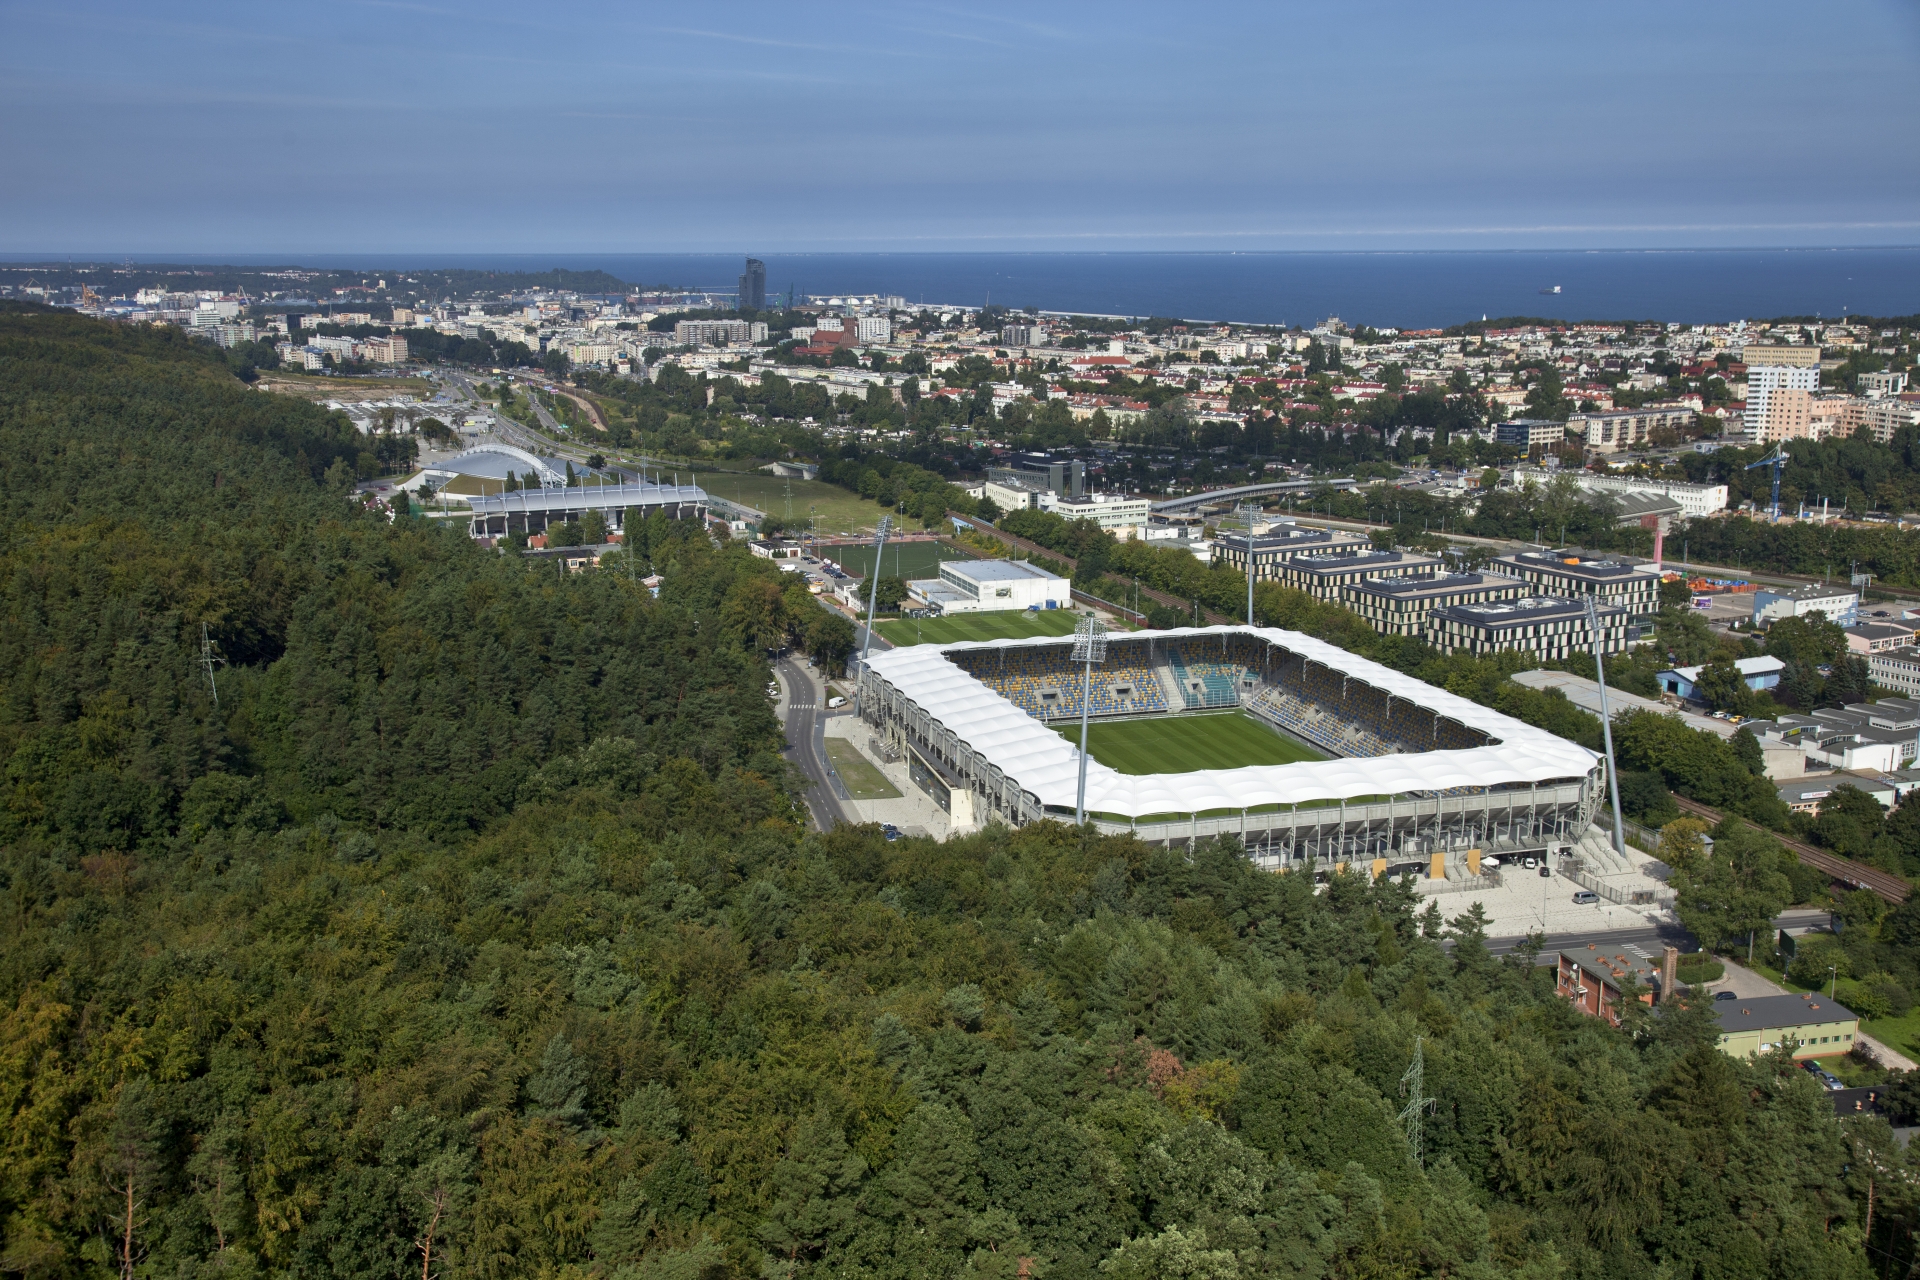 Stadion Miejski w Gdyni z lotu ptaka